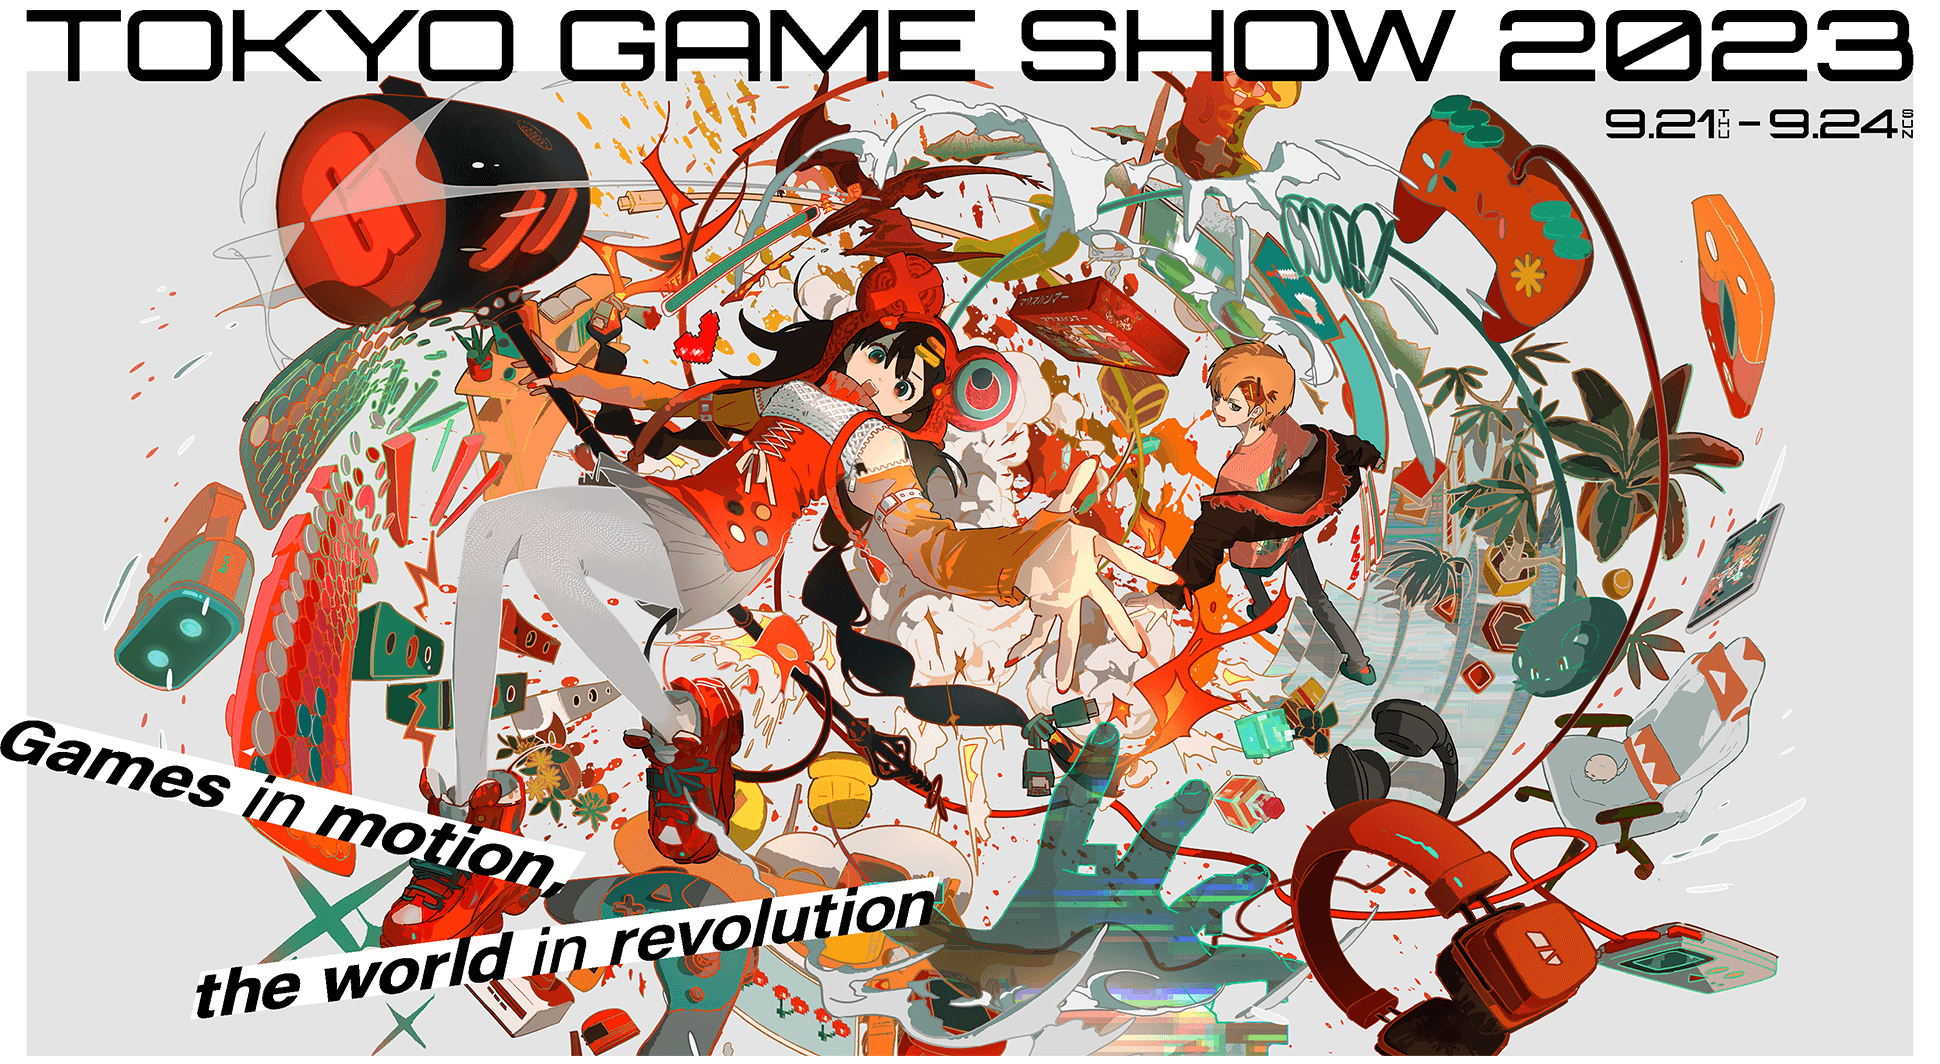 Inilah 10 Game Indie yang Meriahkan Tokyo Game Show 2023 21-24 September, Salah Satunya Favorit Andakah?